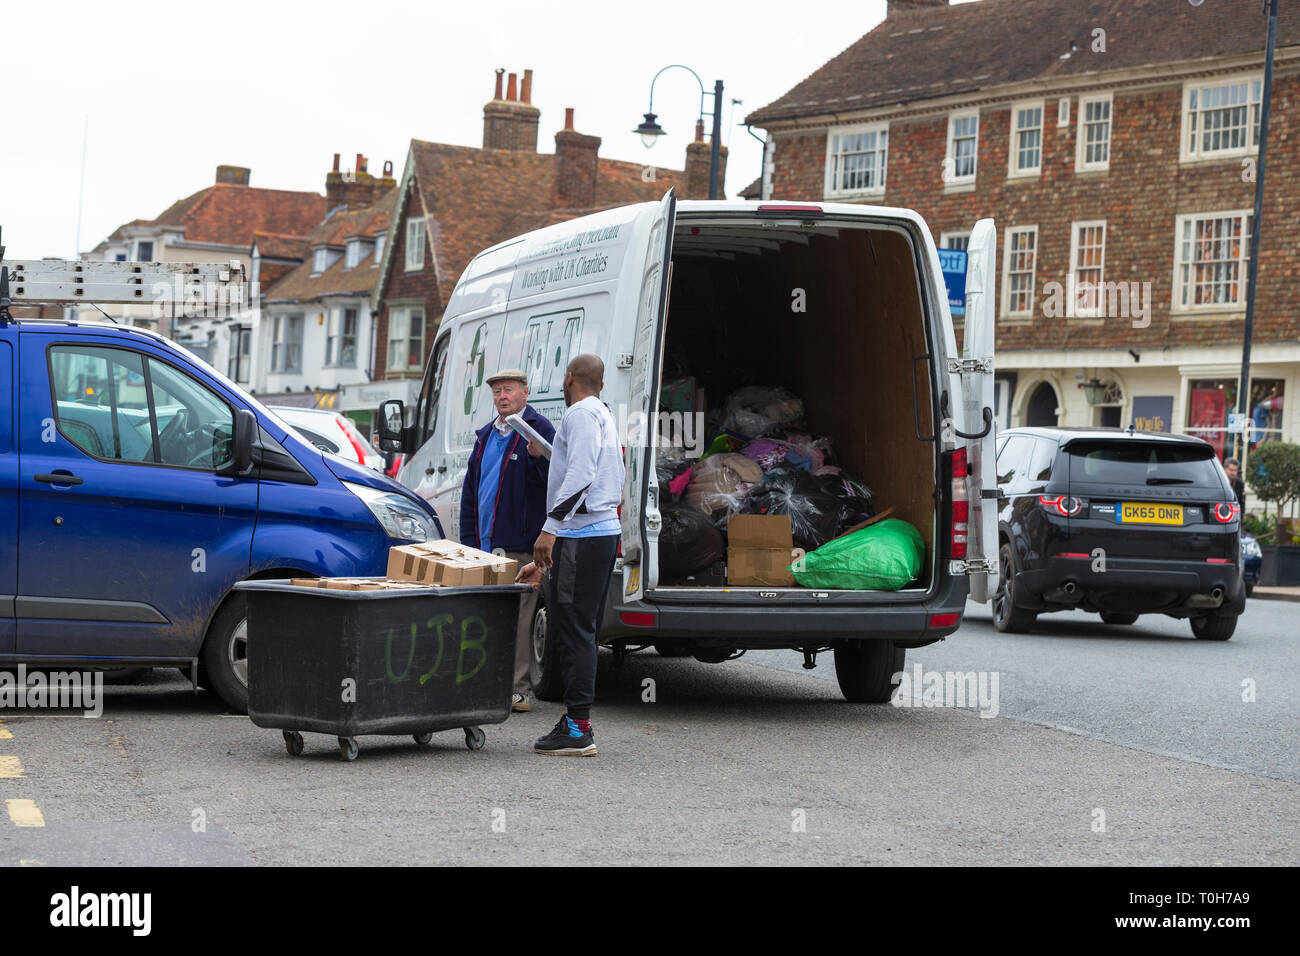 Reciclaje de restos van con chofer y carro, UK Foto de stock